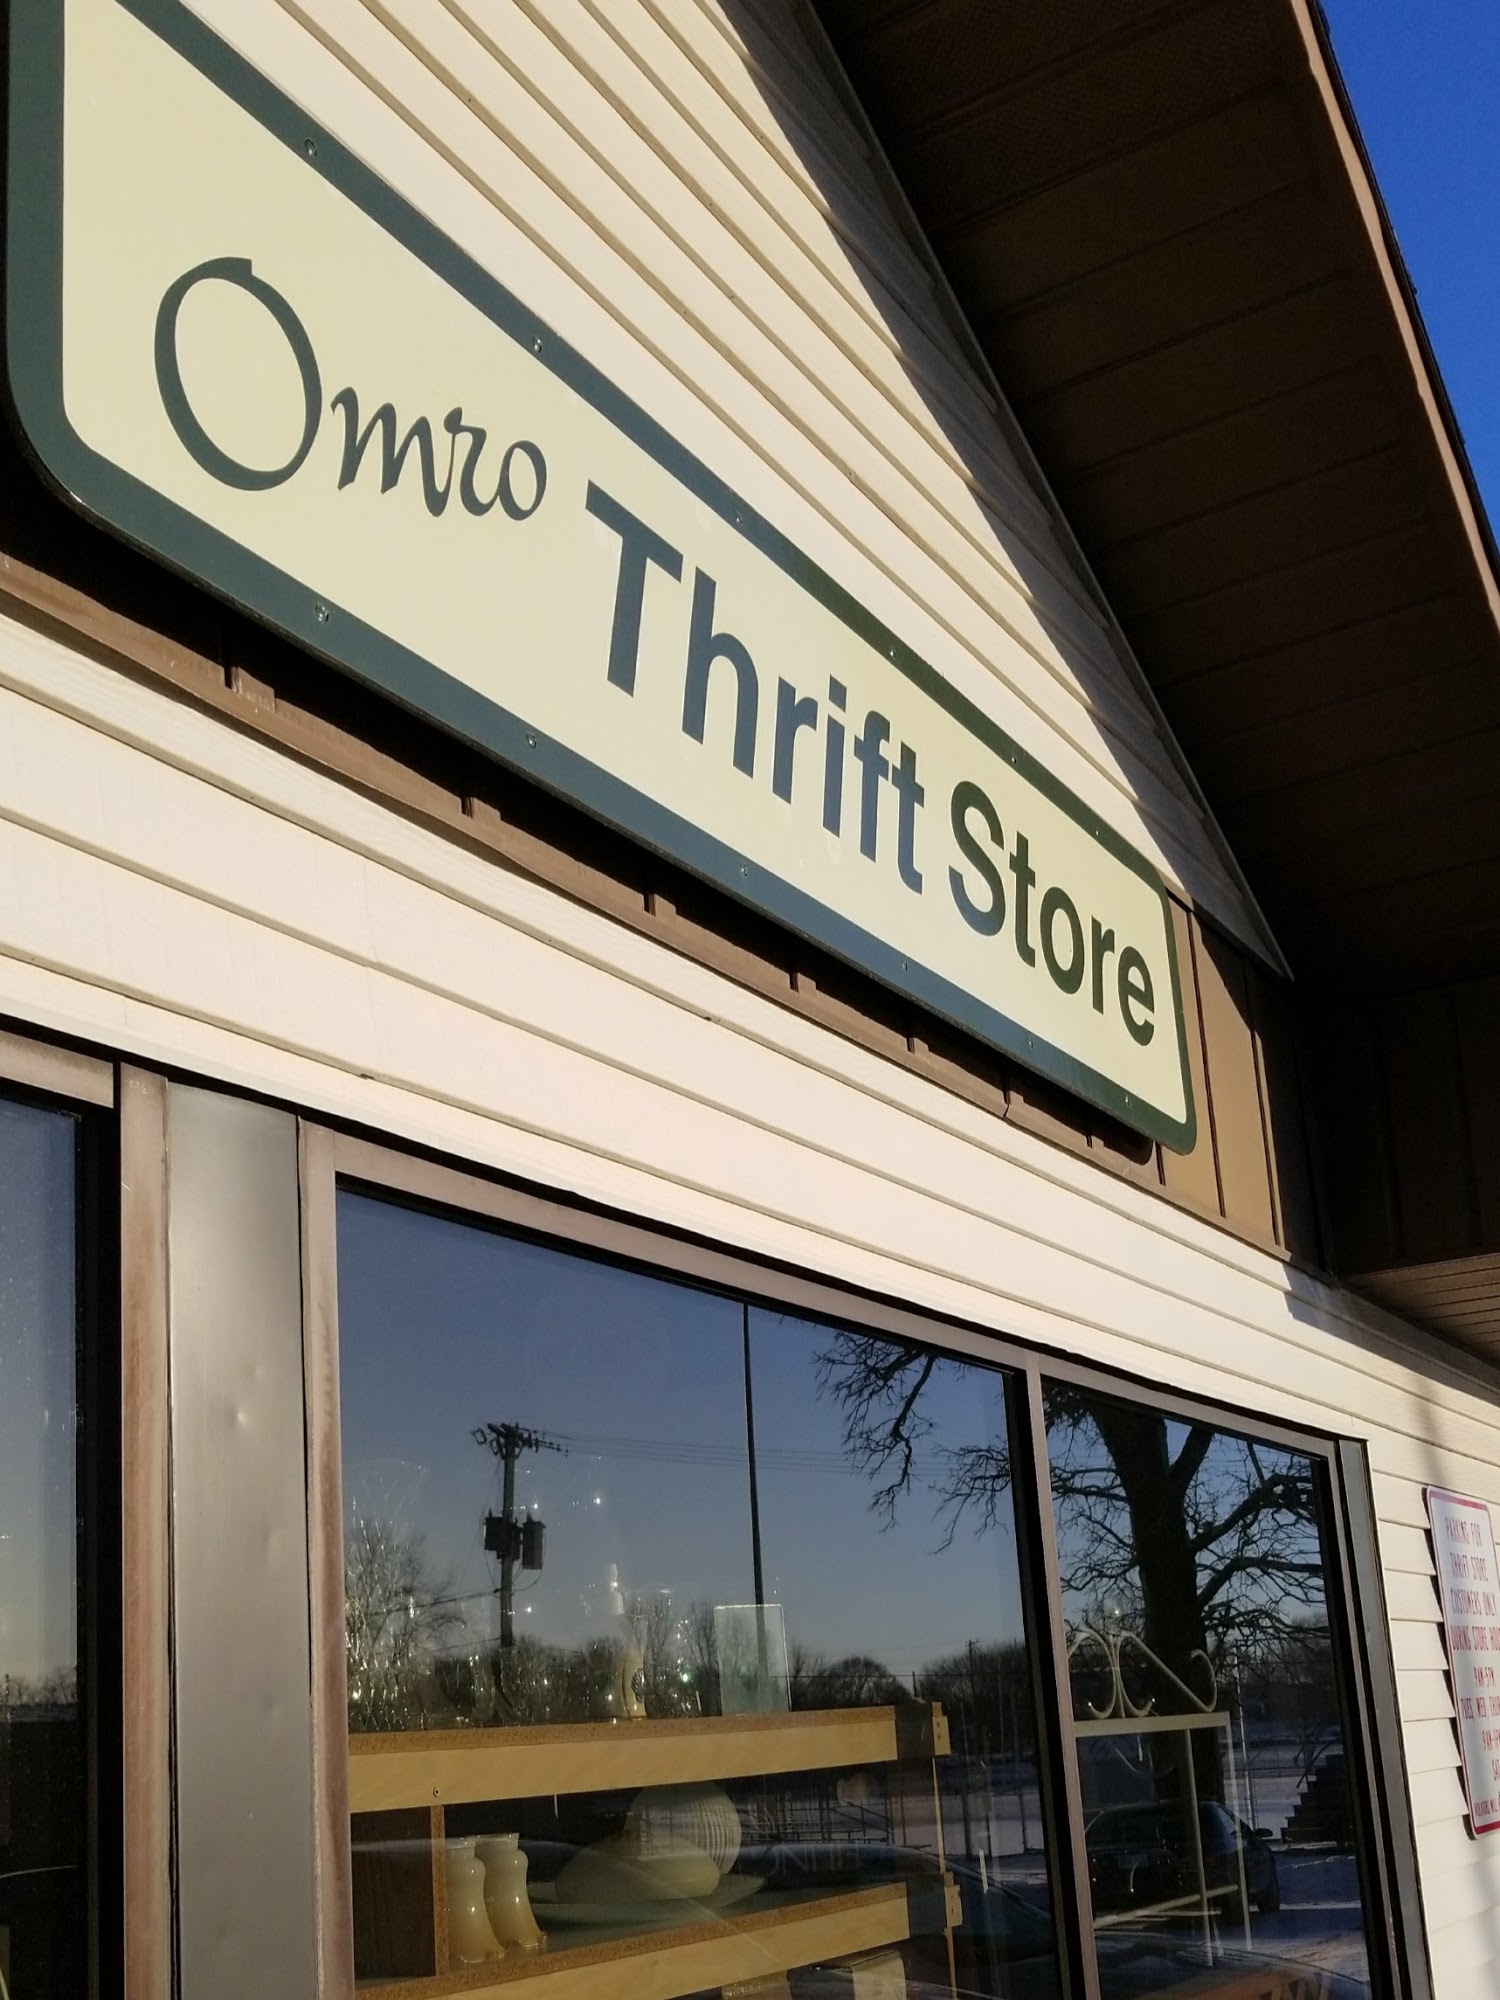 Omro Thrift Store